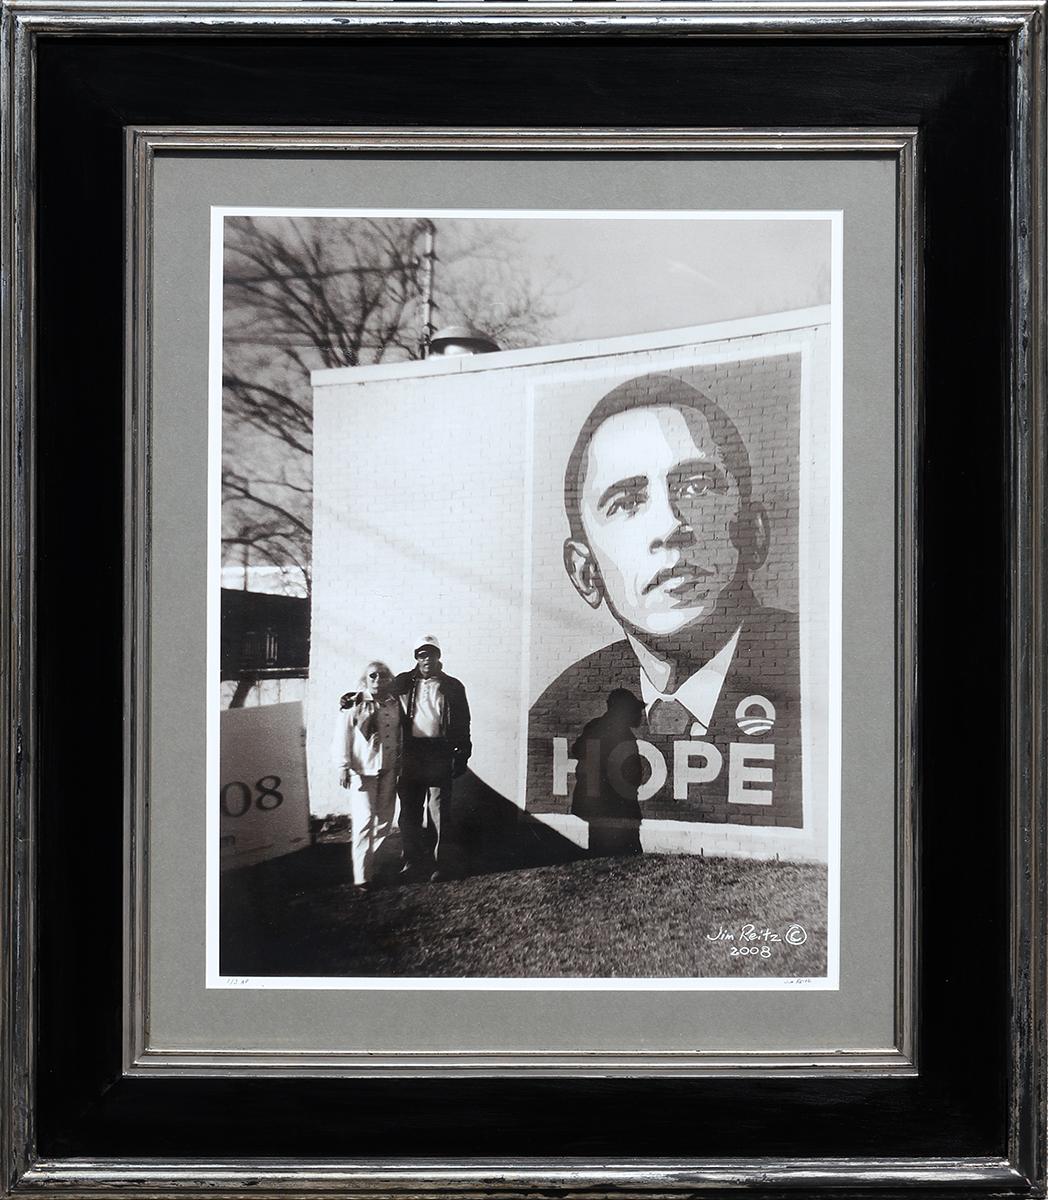 Black and White Photograph Jim Reitz - Photographie contemporaine de rue noire et blanche d'un couple avec une fresque murale d' Obama